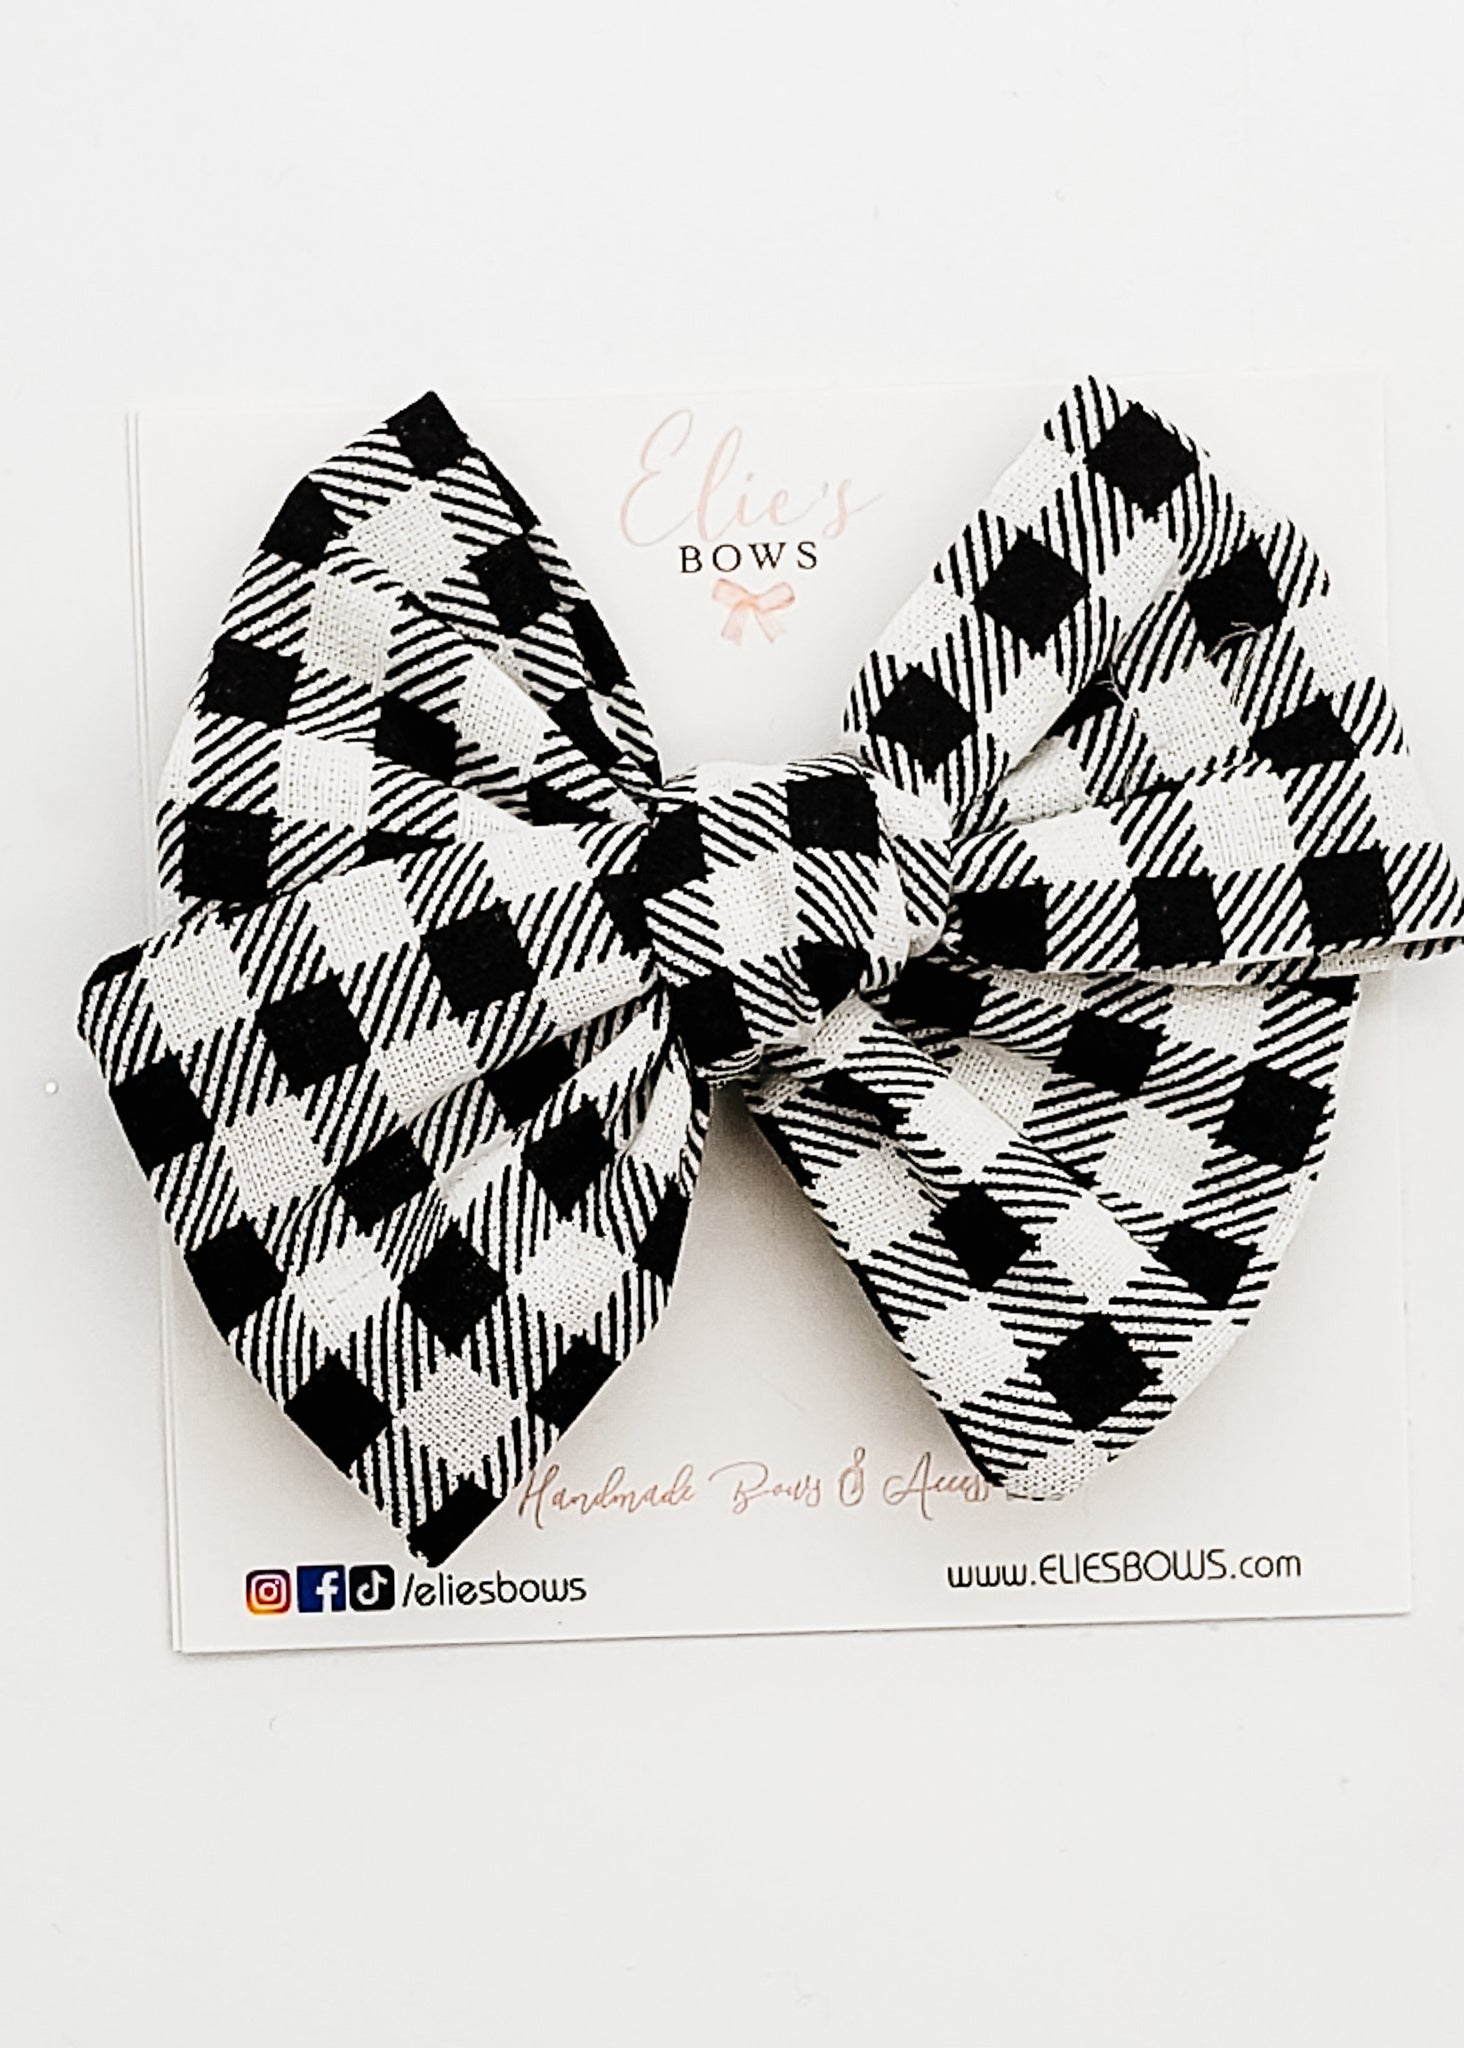 Black & White - Elie Fabric Bow - 3.5"-Bows-Elie’s Bows